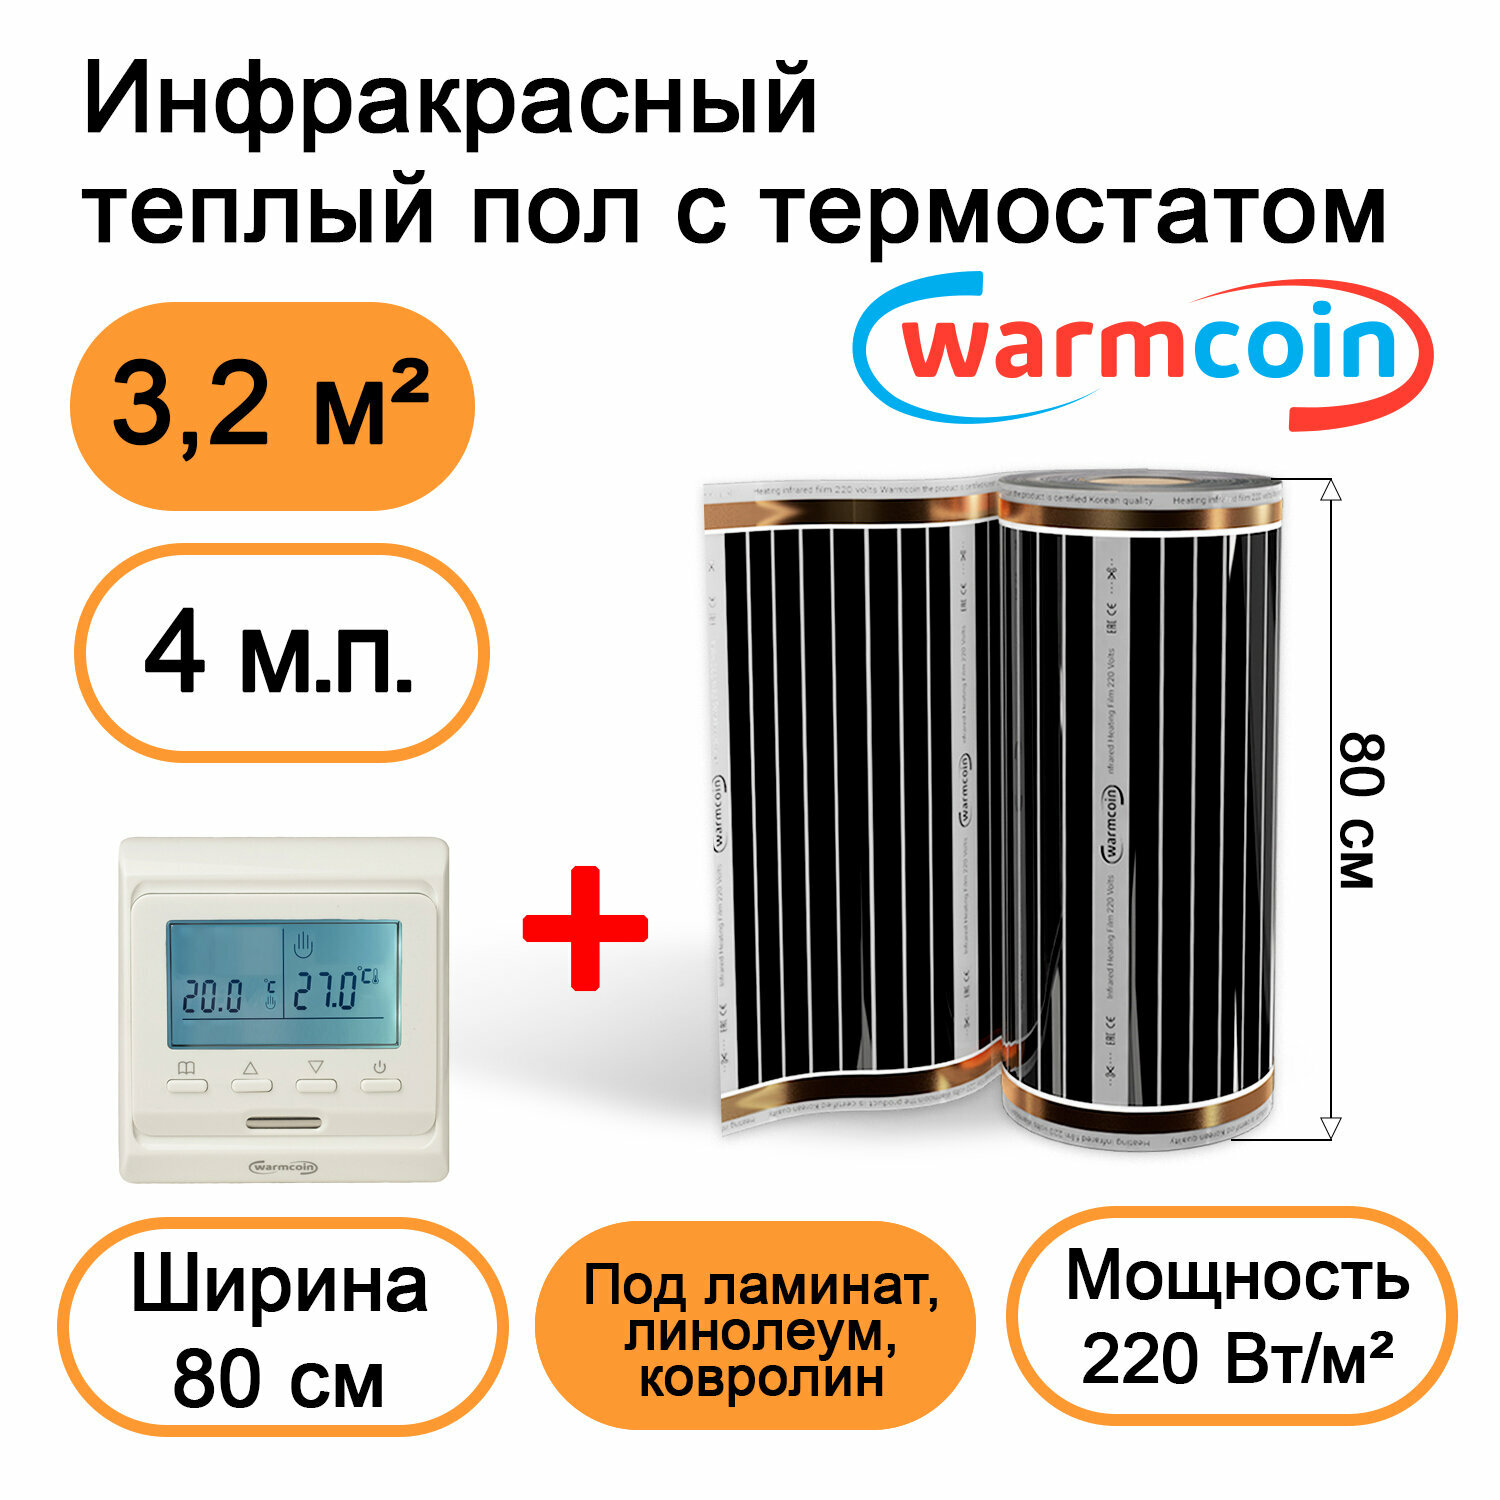 Теплый пол Warmcoin инфракрасный 80 см, 220 Вт/м.кв. с электронным терморегулятором, 4 м.п